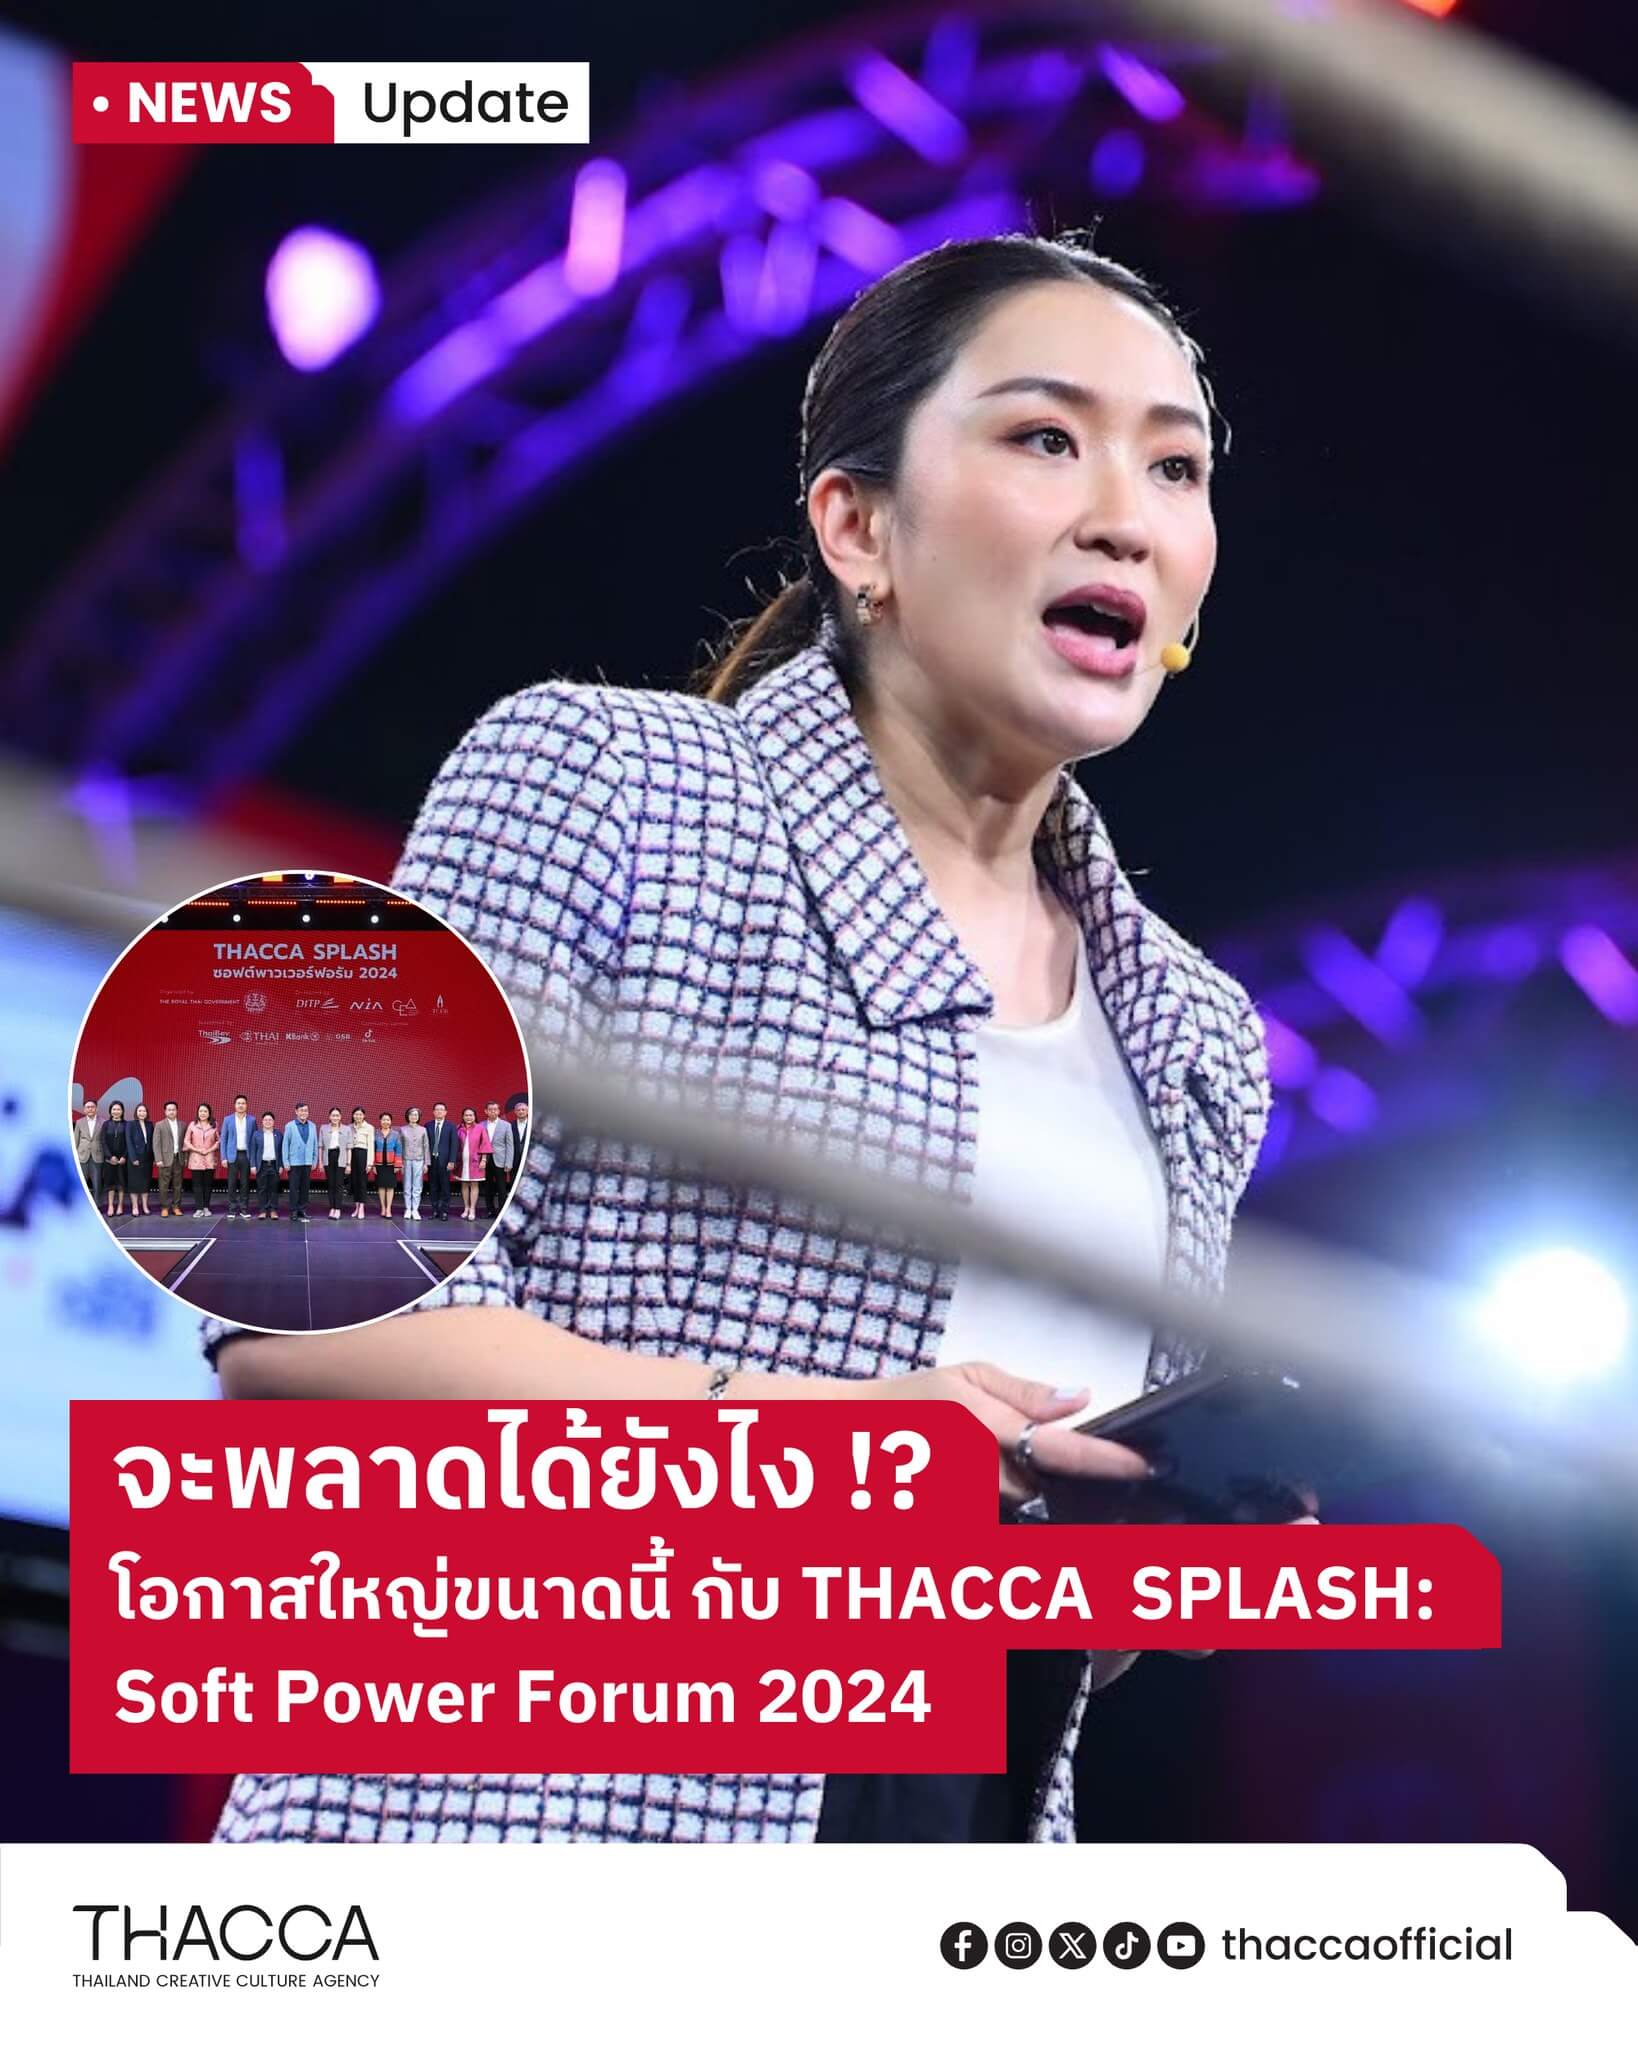 THACCA SPLASH: SOFT POWER FORUM 2024 ครั้งแรกของประเทศไทยกับฟอรัมซอฟต์พาวเวอร์ระดับนานาชาติ